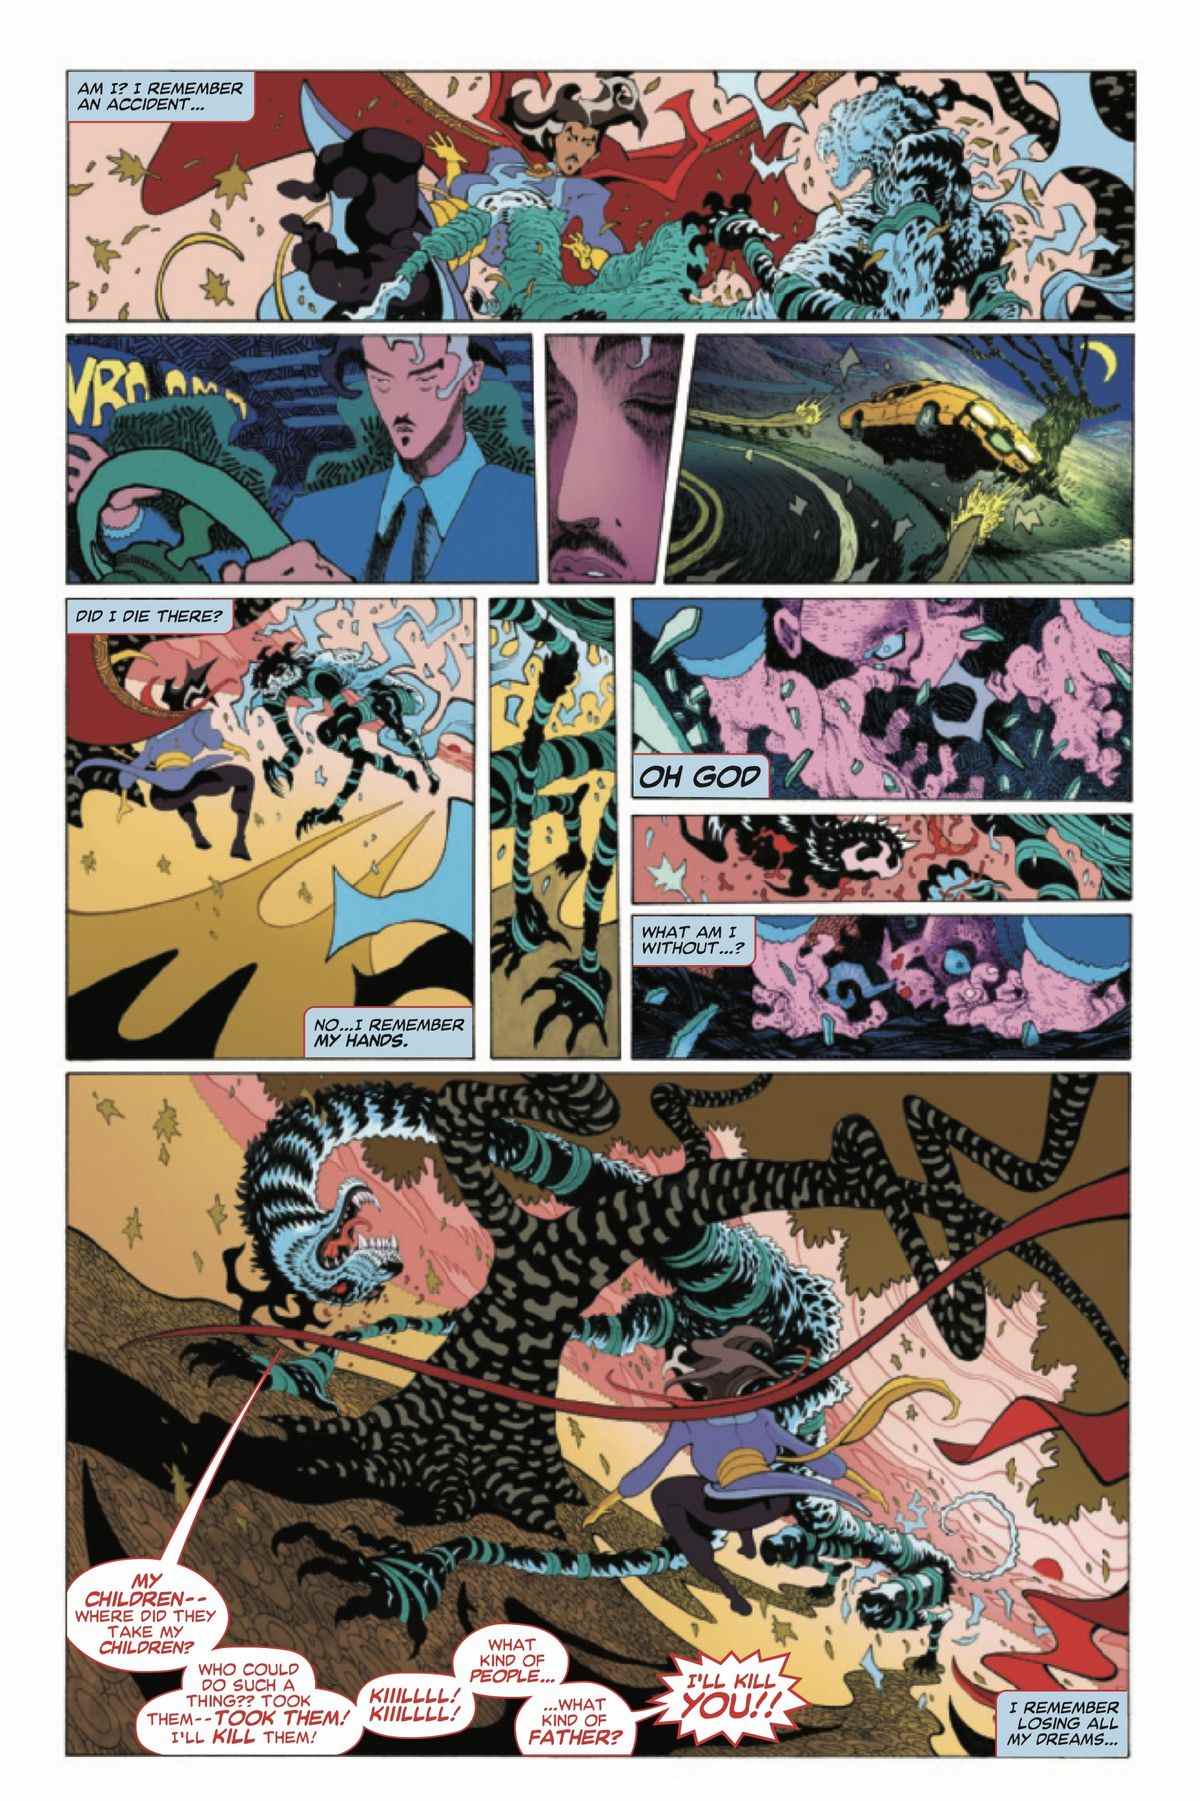 Une page de Doctor Strange # 1 (Marvel Comics, 2022) où des scènes oniriques de l'histoire d'origine de Doctor Strange sont entrecoupées d'une scène du présent où Doctor Strange combat un tigre fantôme.